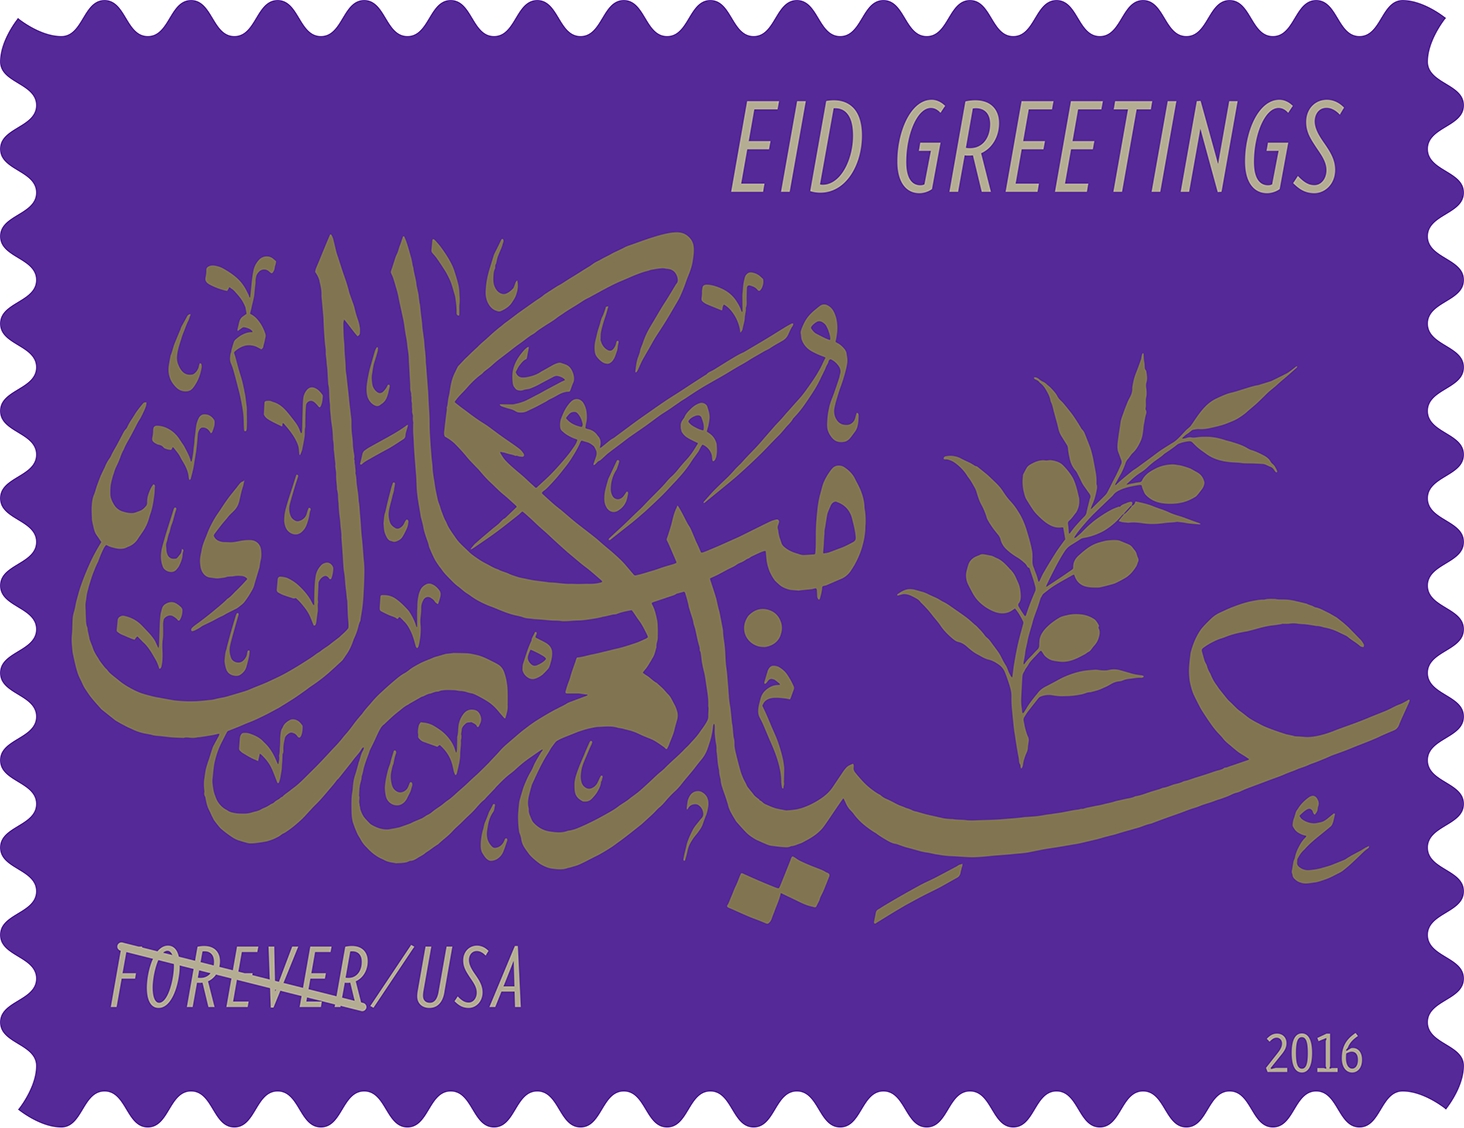 Eid Greetings (&copy; 2016 USPS)